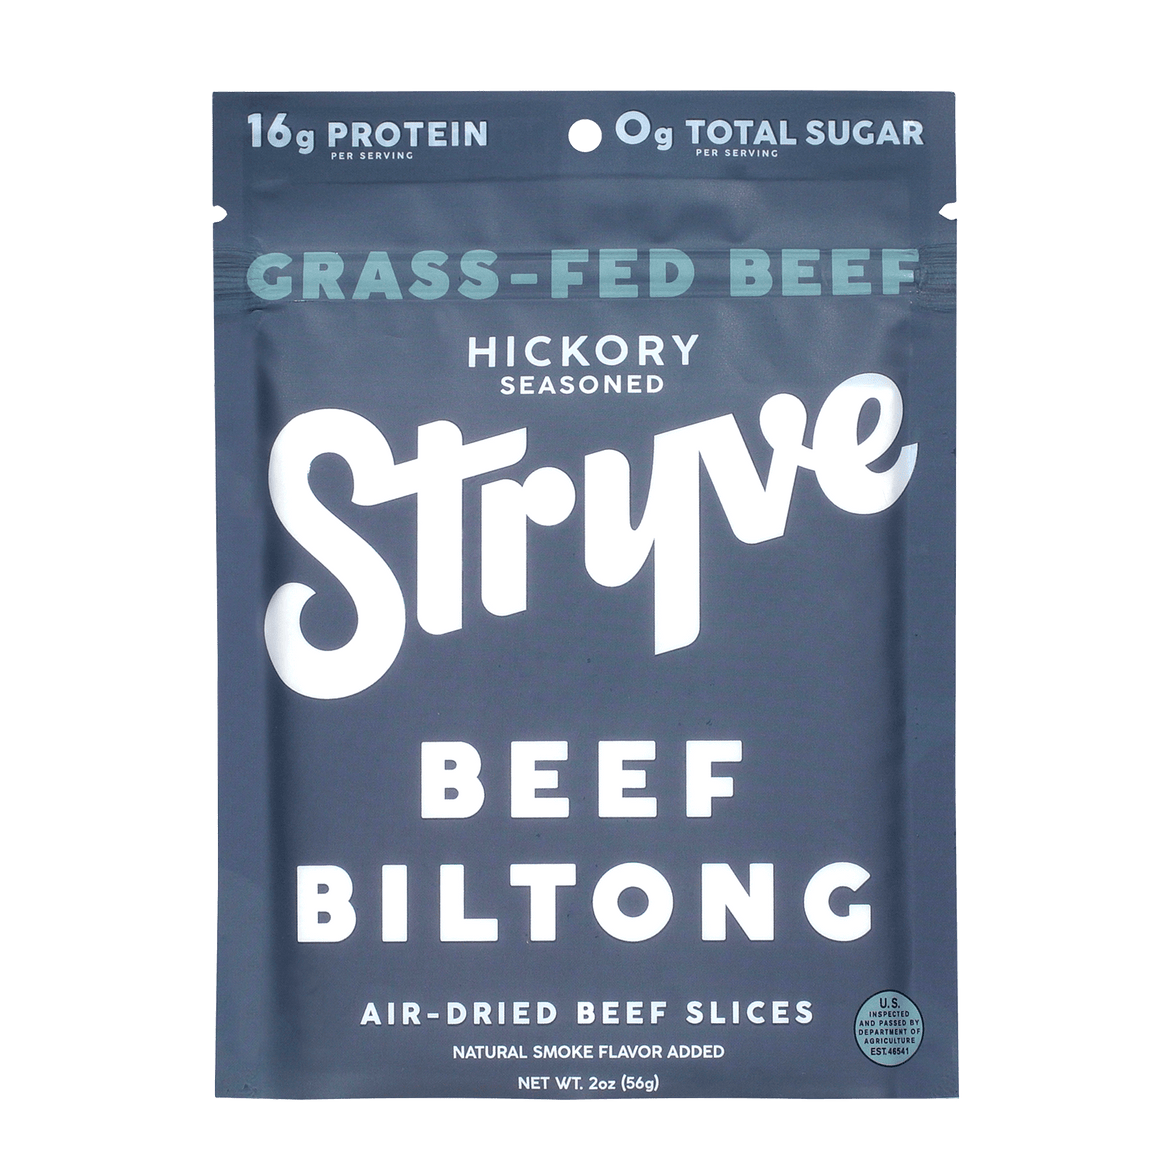 Grass-Fed Hickory Sliced Biltong